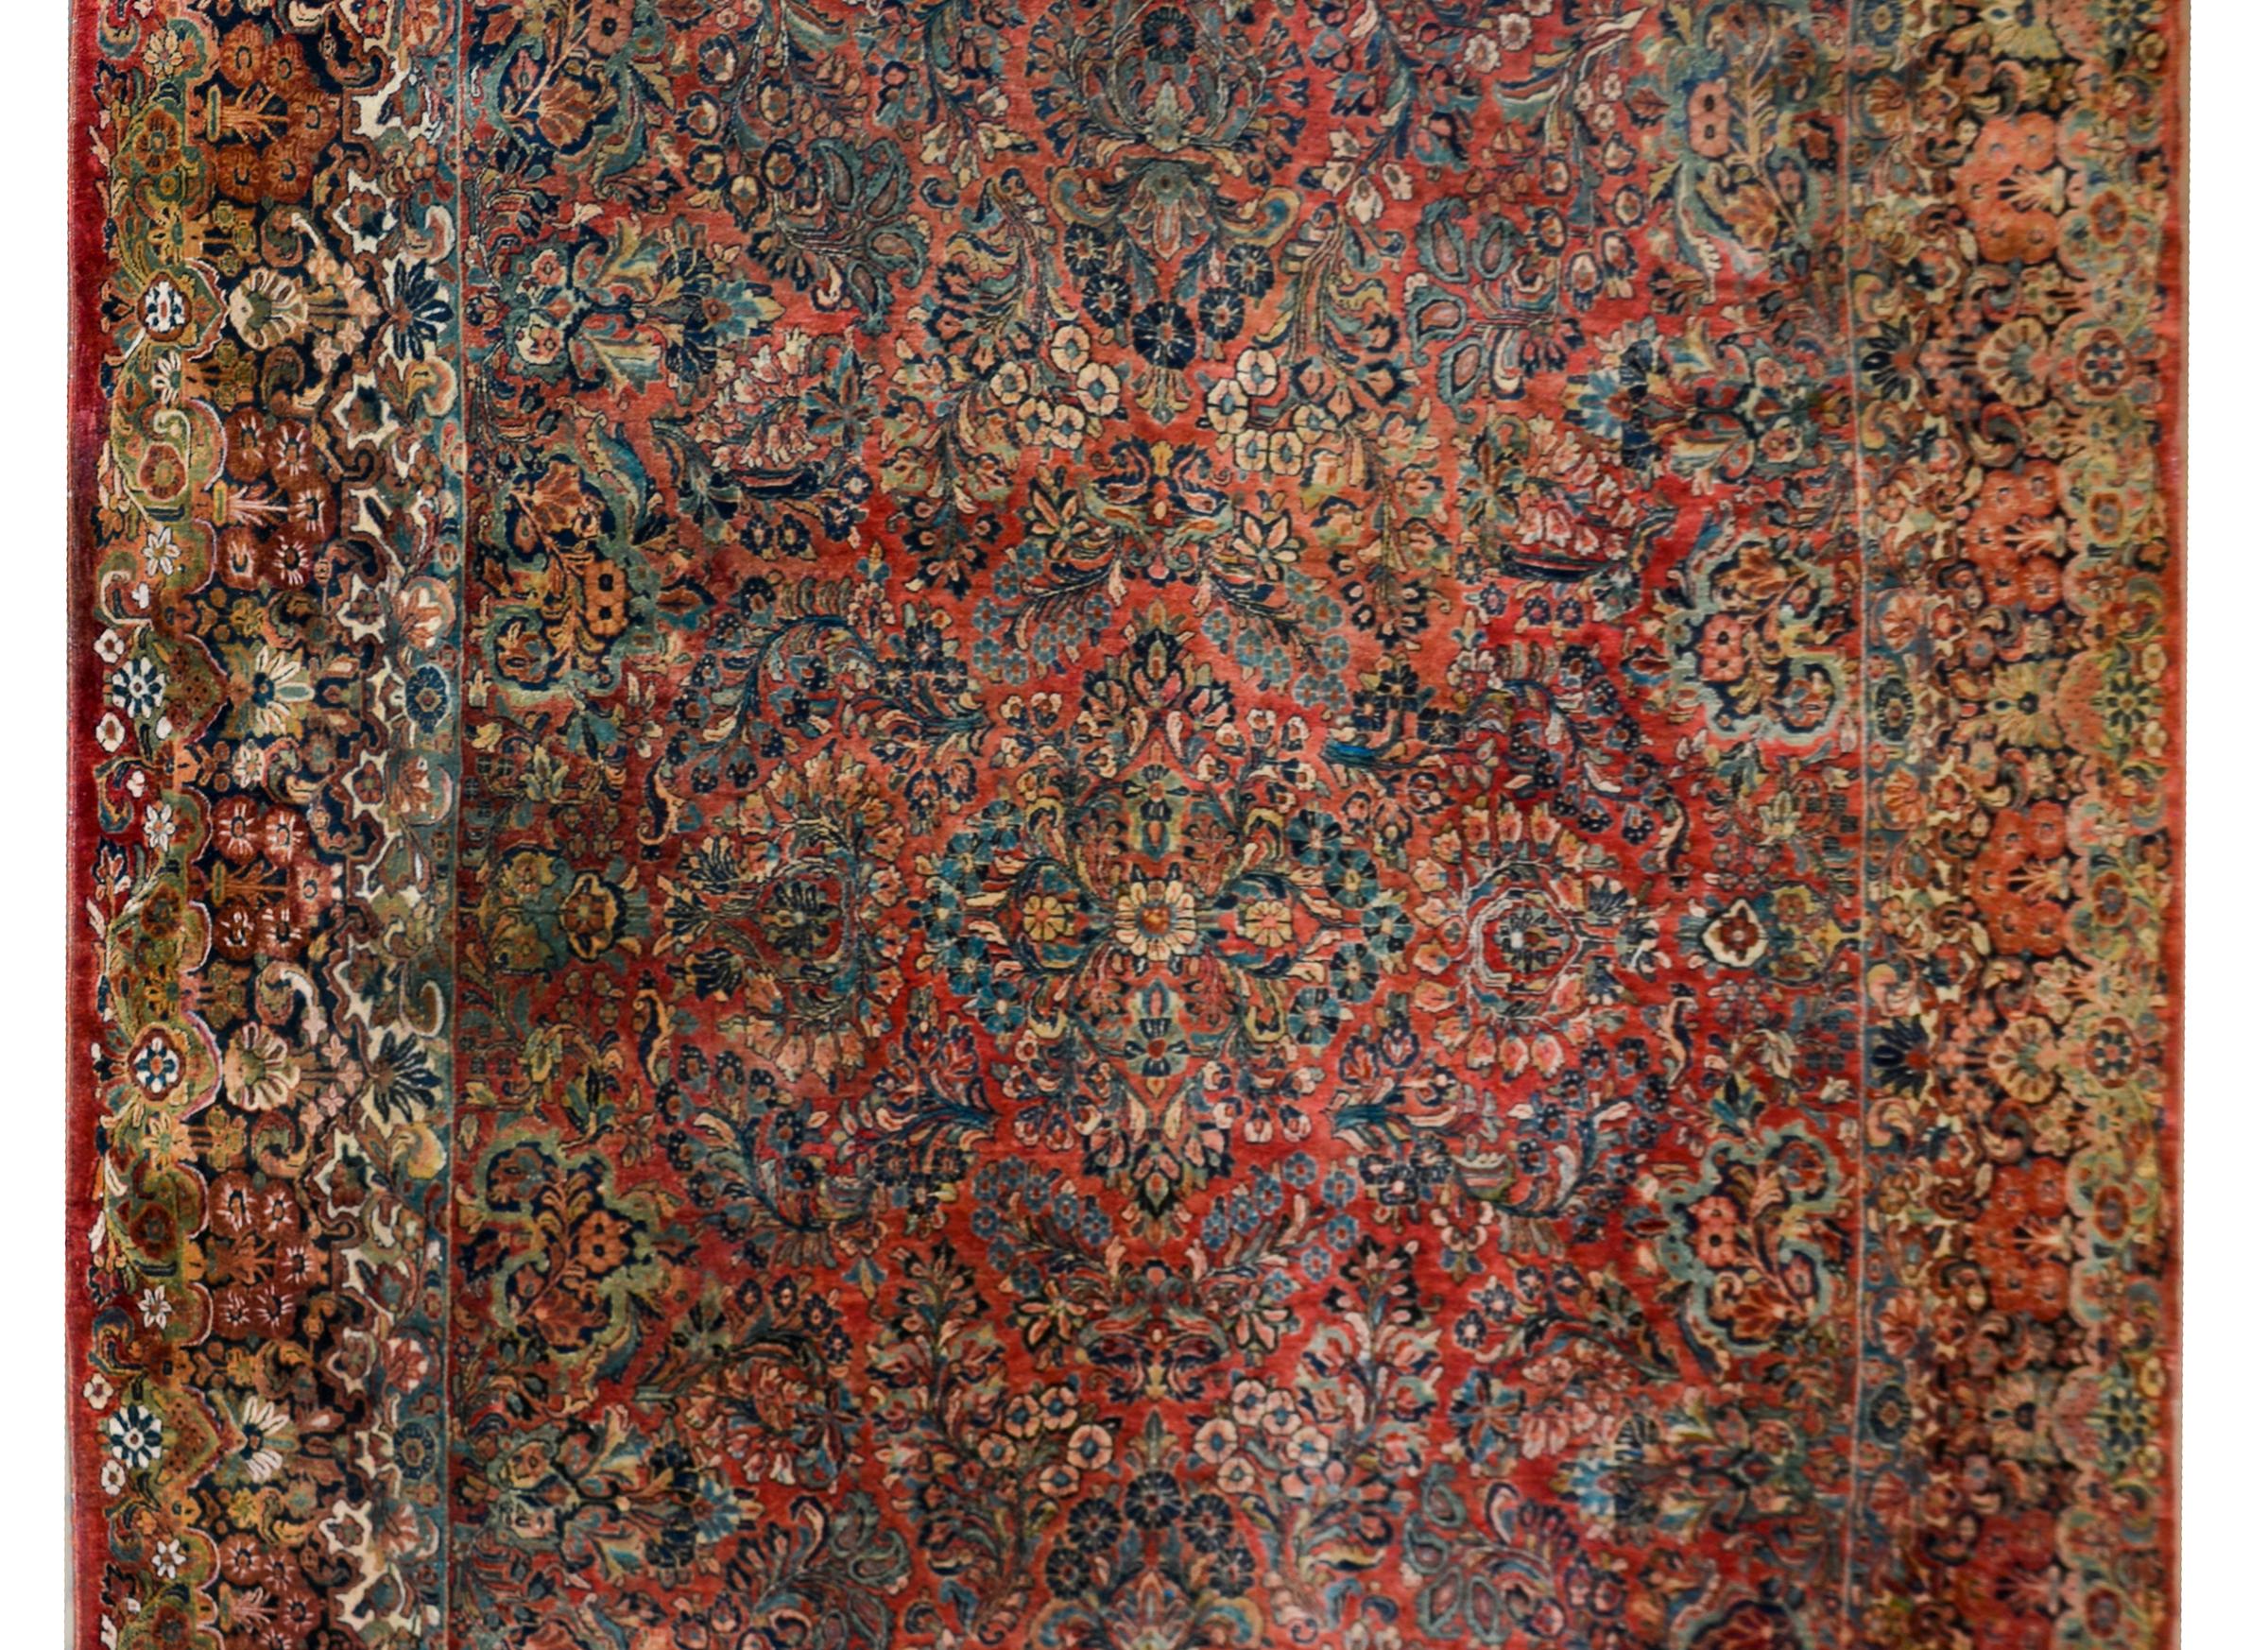 Ein unglaublicher persischer Sarouk-Teppich aus dem frühen 20. Jahrhundert mit einem unglaublichen floralen Cluster-Muster, das in satten und dunklen Farben gewebt ist, darunter Rot-, Creme- und Rosatöne sowie helle und dunkle Indigos, die alle auf